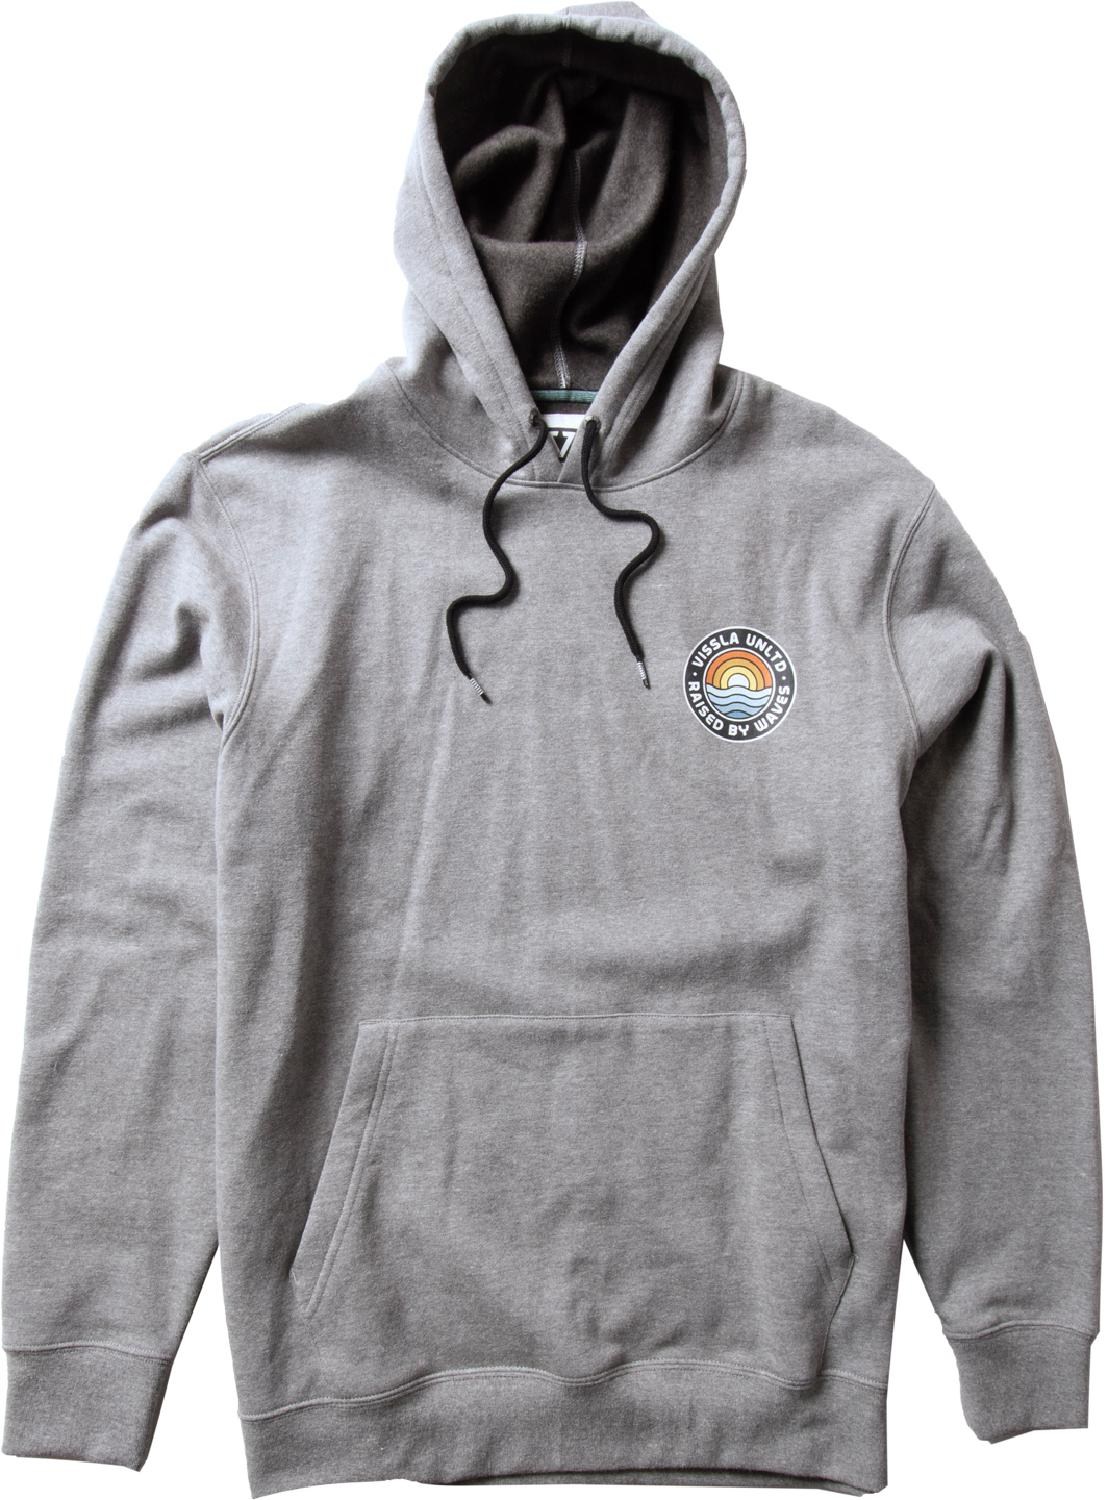 Пуловер с капюшоном Coastal Eco - Мужской VISSLA, серый